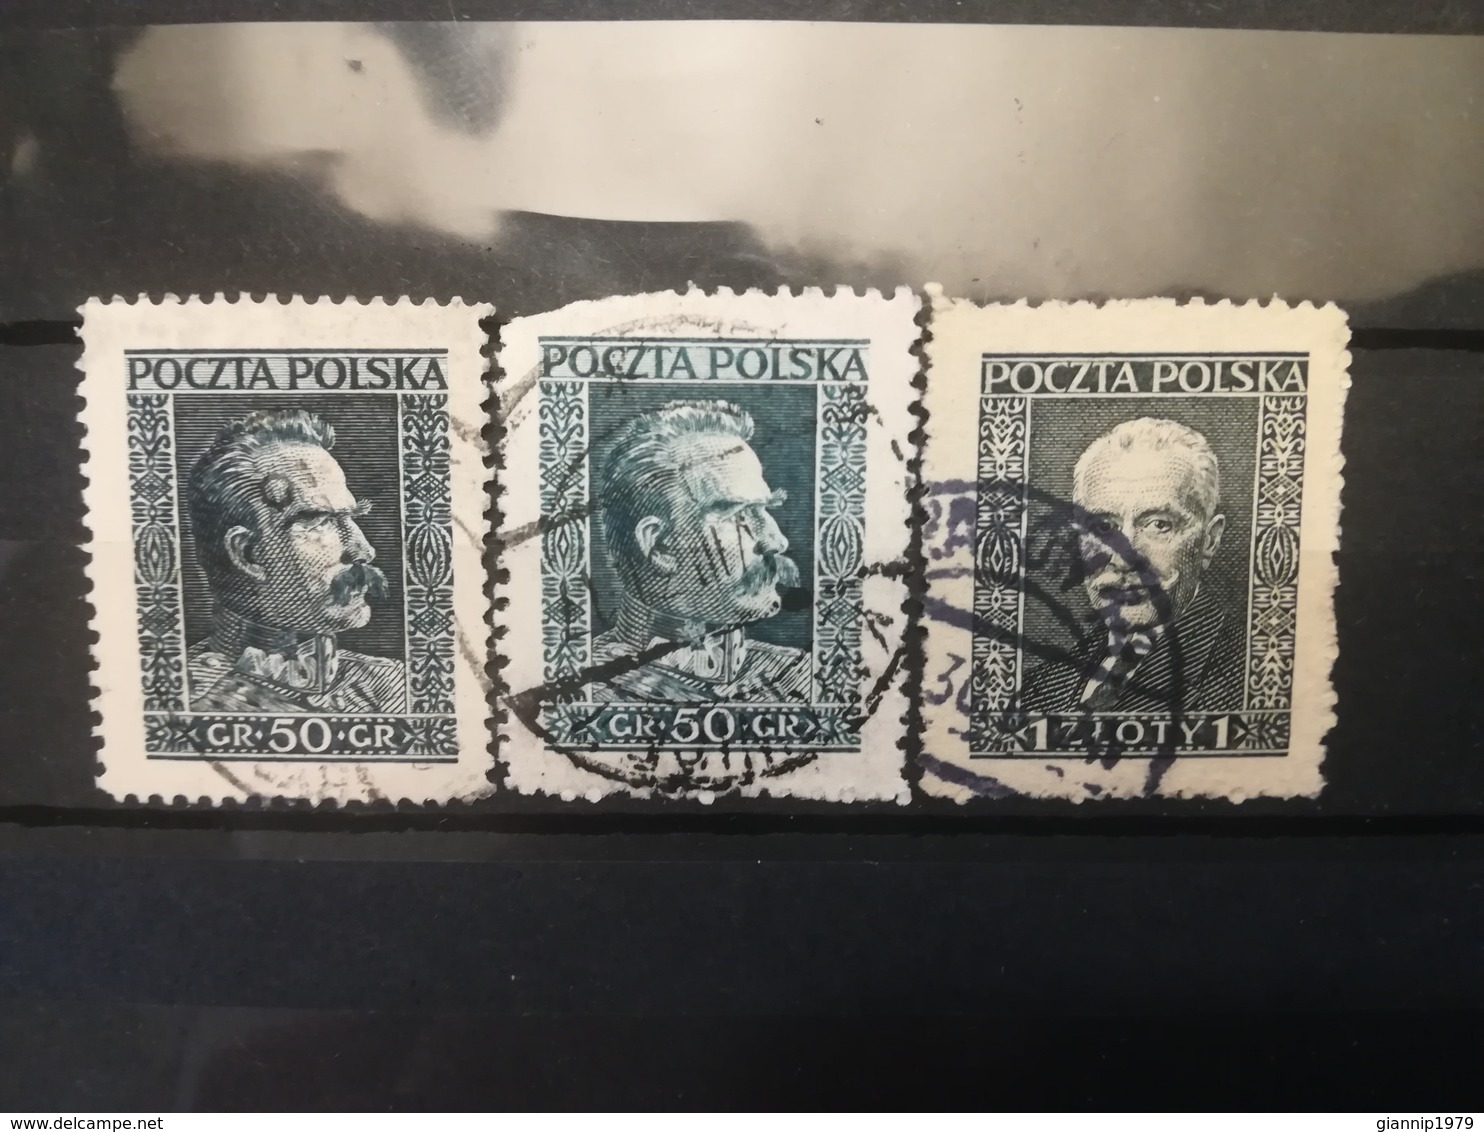 FRANCOBOLLI STAMPS POLONIA POLAND 1928 USED SERIE COMPLETA PILSUDSKI MOSCICKI POLSKA - Used Stamps